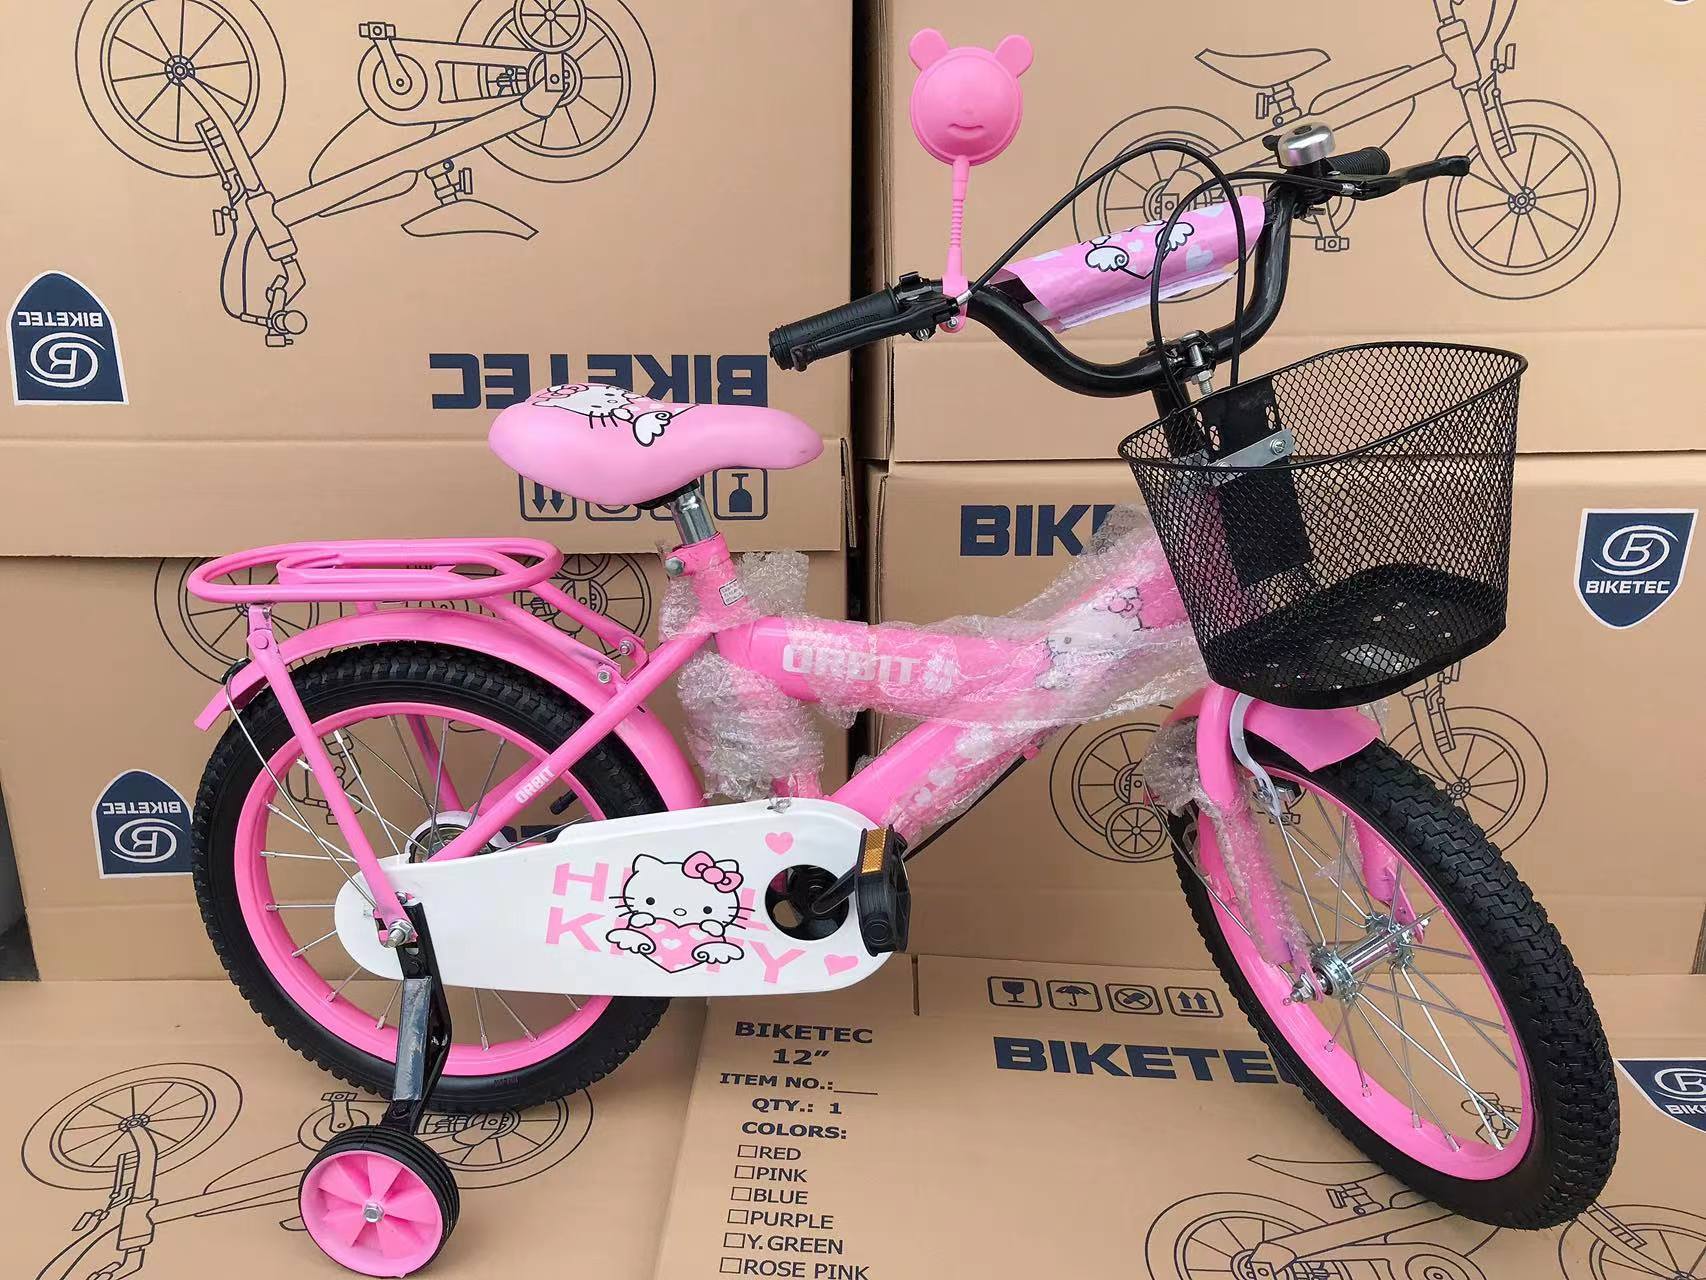 Sunflower Bell Pink 2 Packs Plastic Kids Girls Bike Front Handlebar Basket 